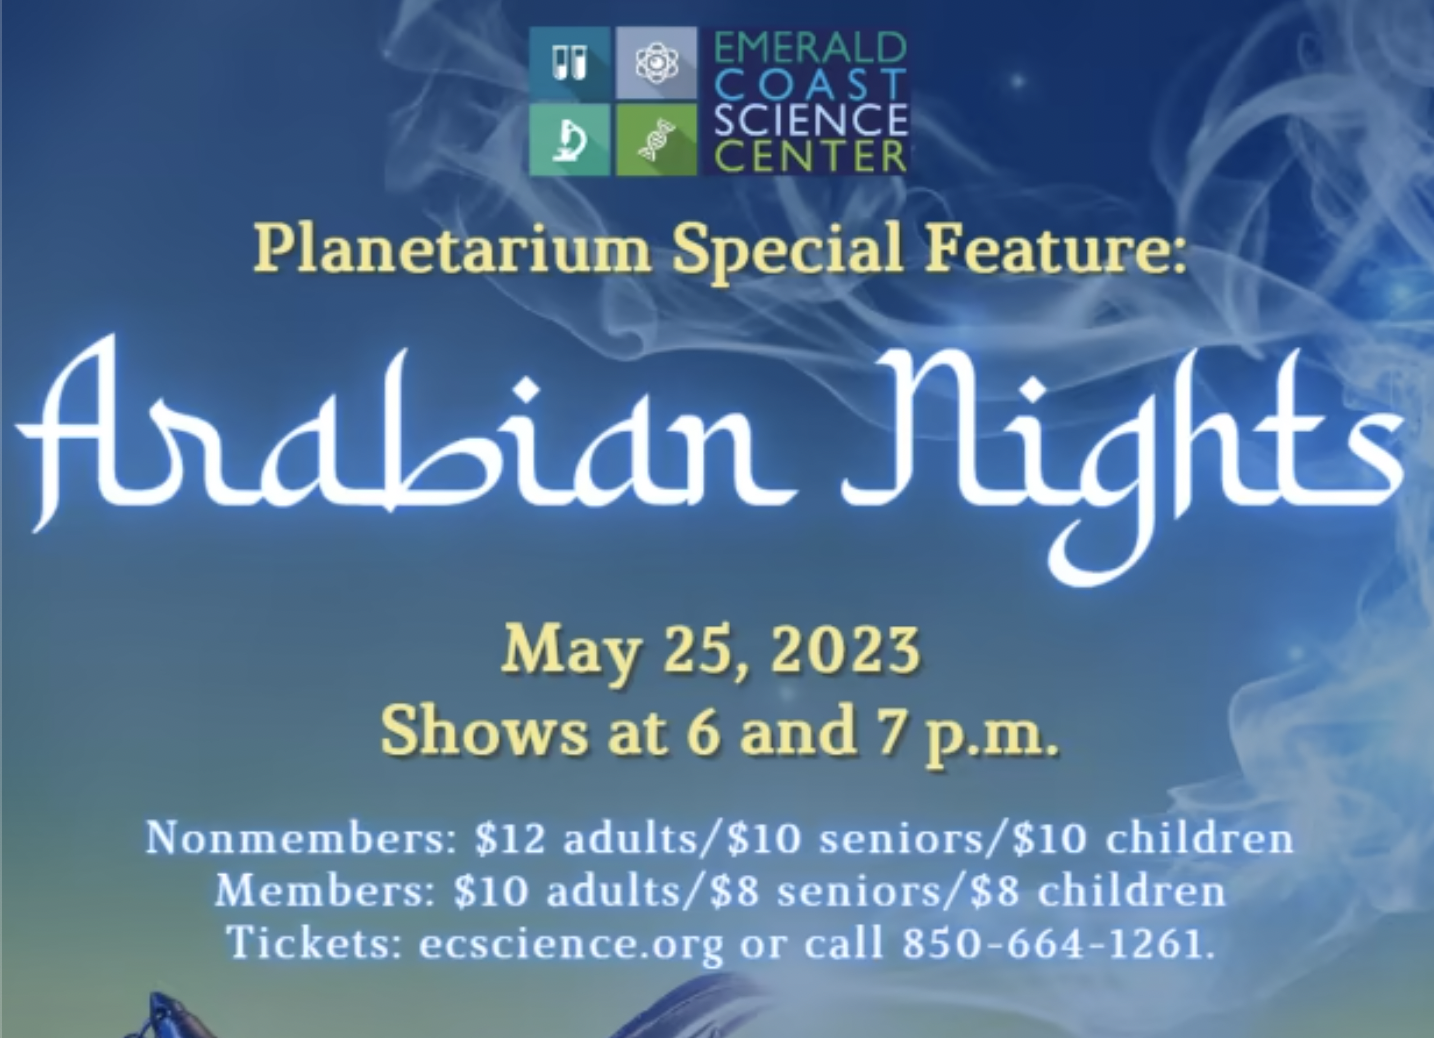 PLANETARIUM SPECIAL FEATURE: ARABIAN NIGHTS